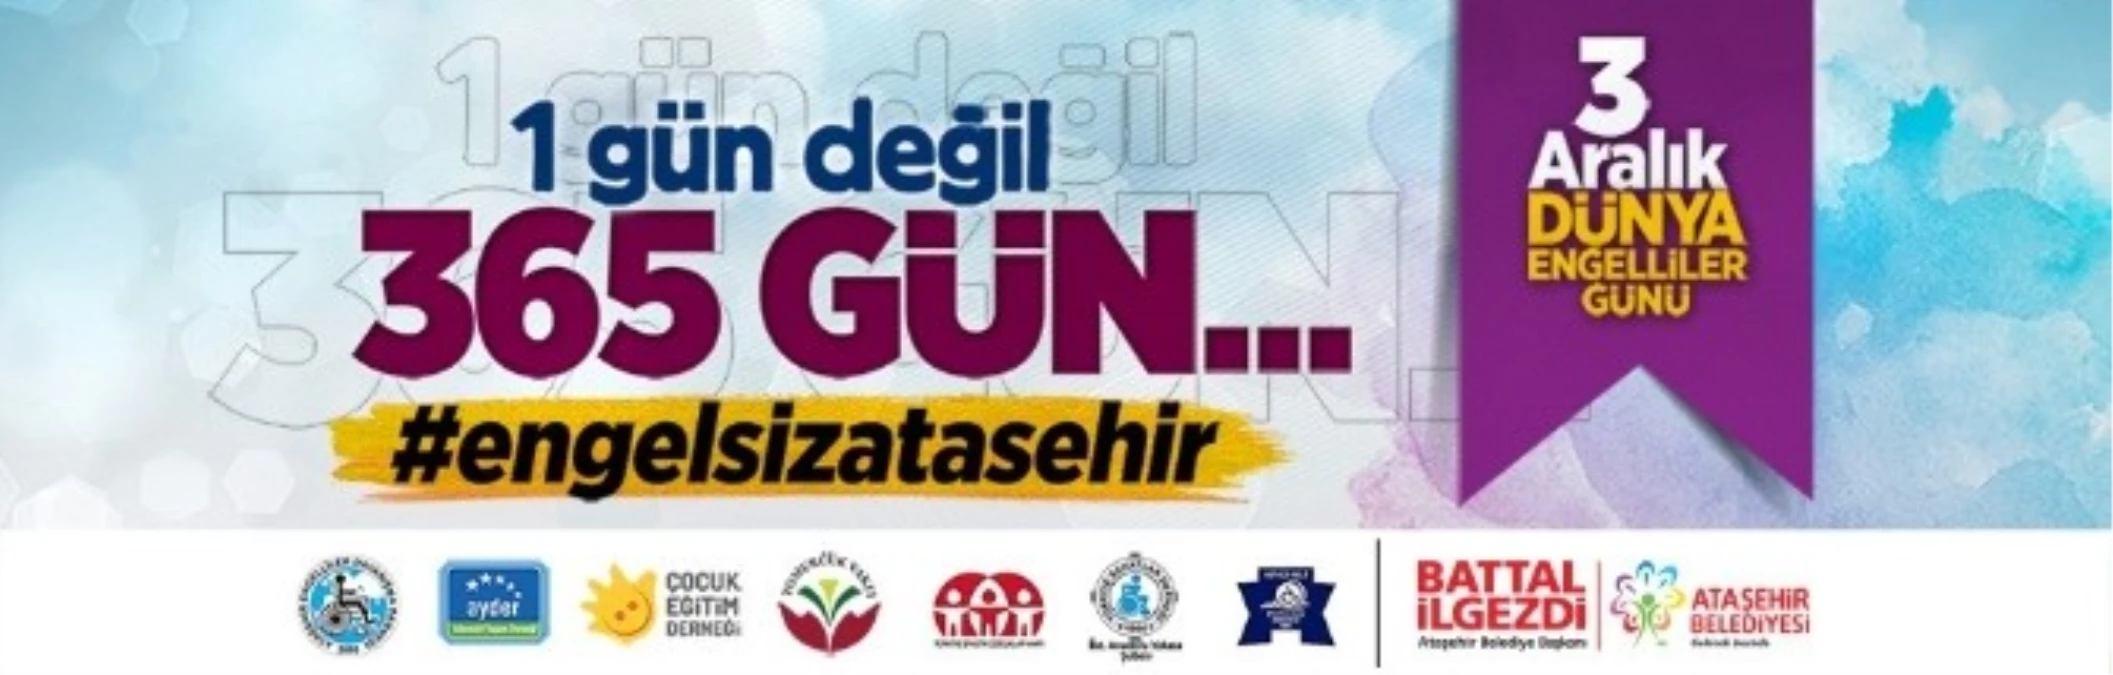 Ataşehir Belediyesi Engelliler Günü\'nde Farklı Bir Projeyi Hayata Geçiriyor